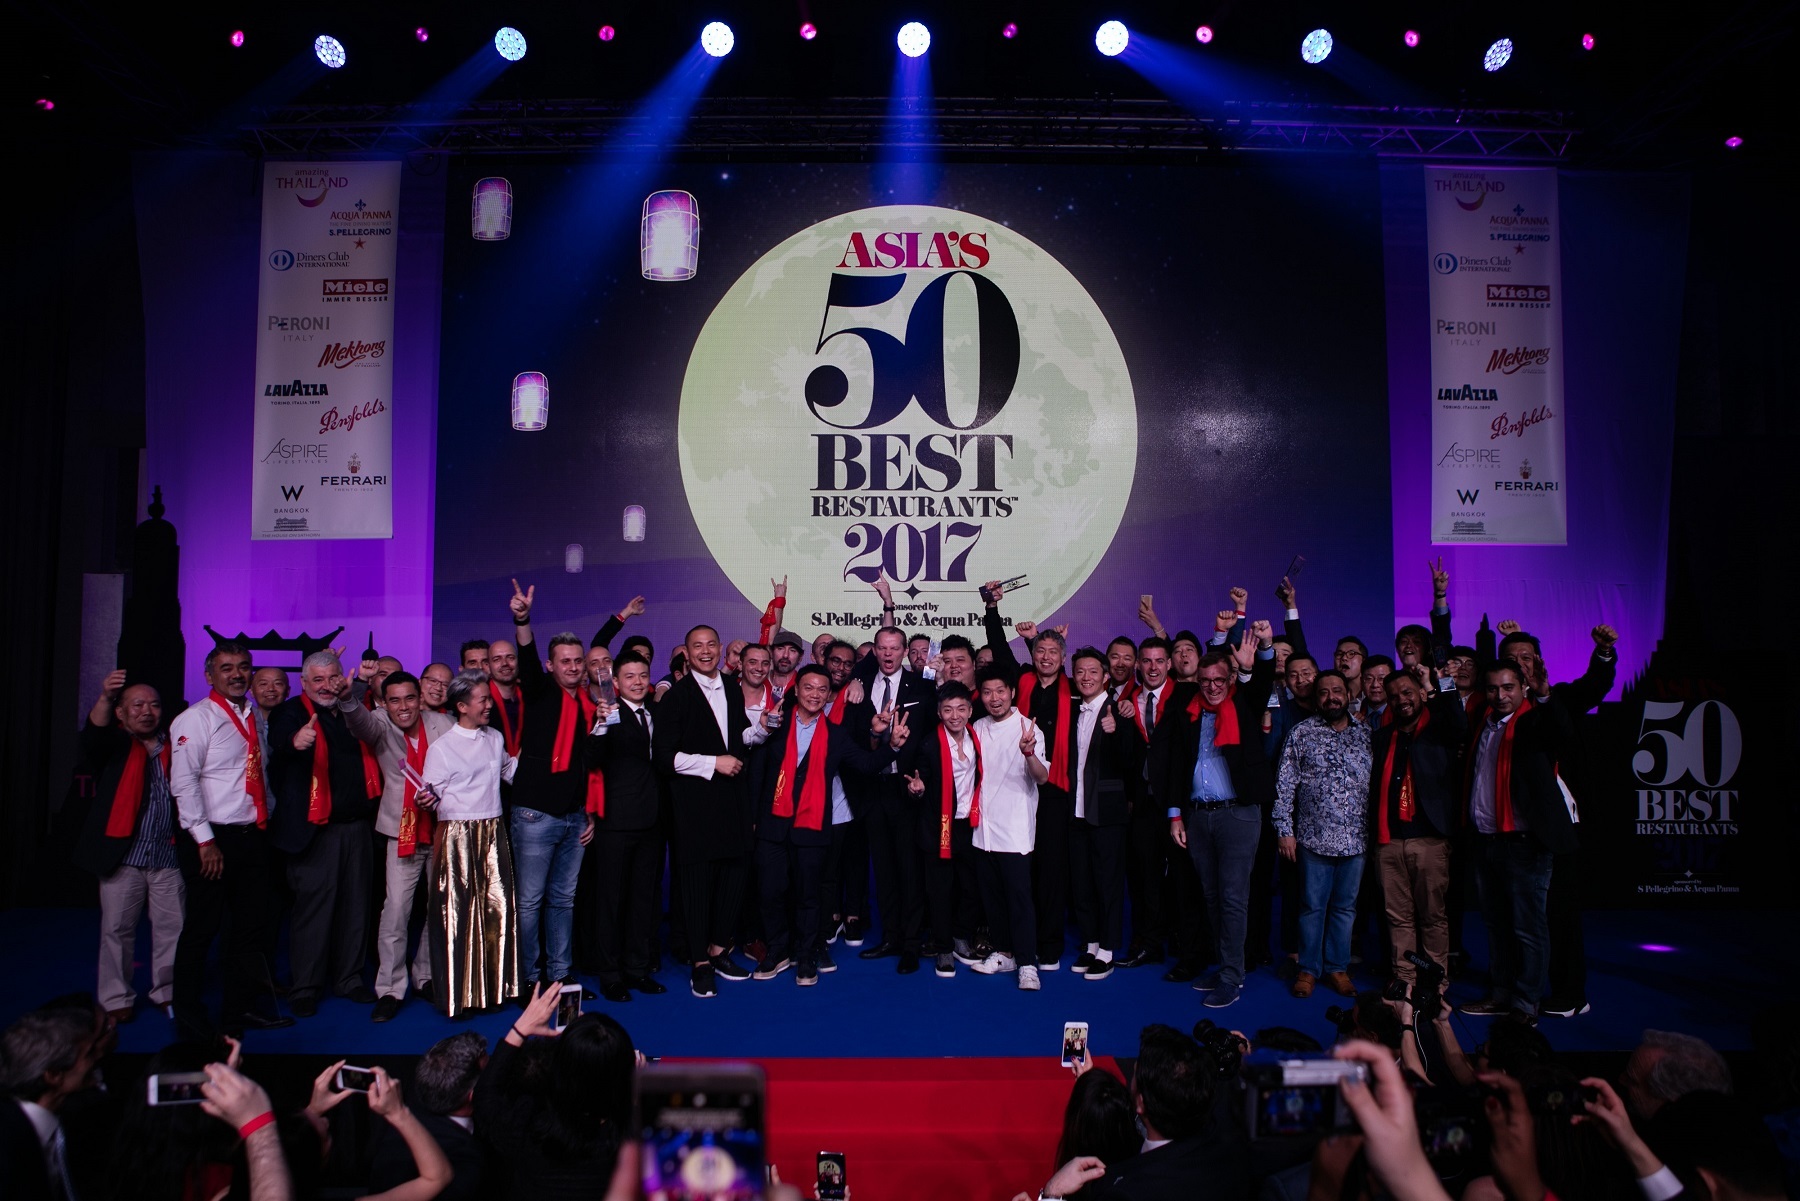 サンペレグリノとアクアパンナがスポンサーを務める第5回「アジアのベストレストラン50」の授賞式で各賞を受賞したシェフおよびレストラン